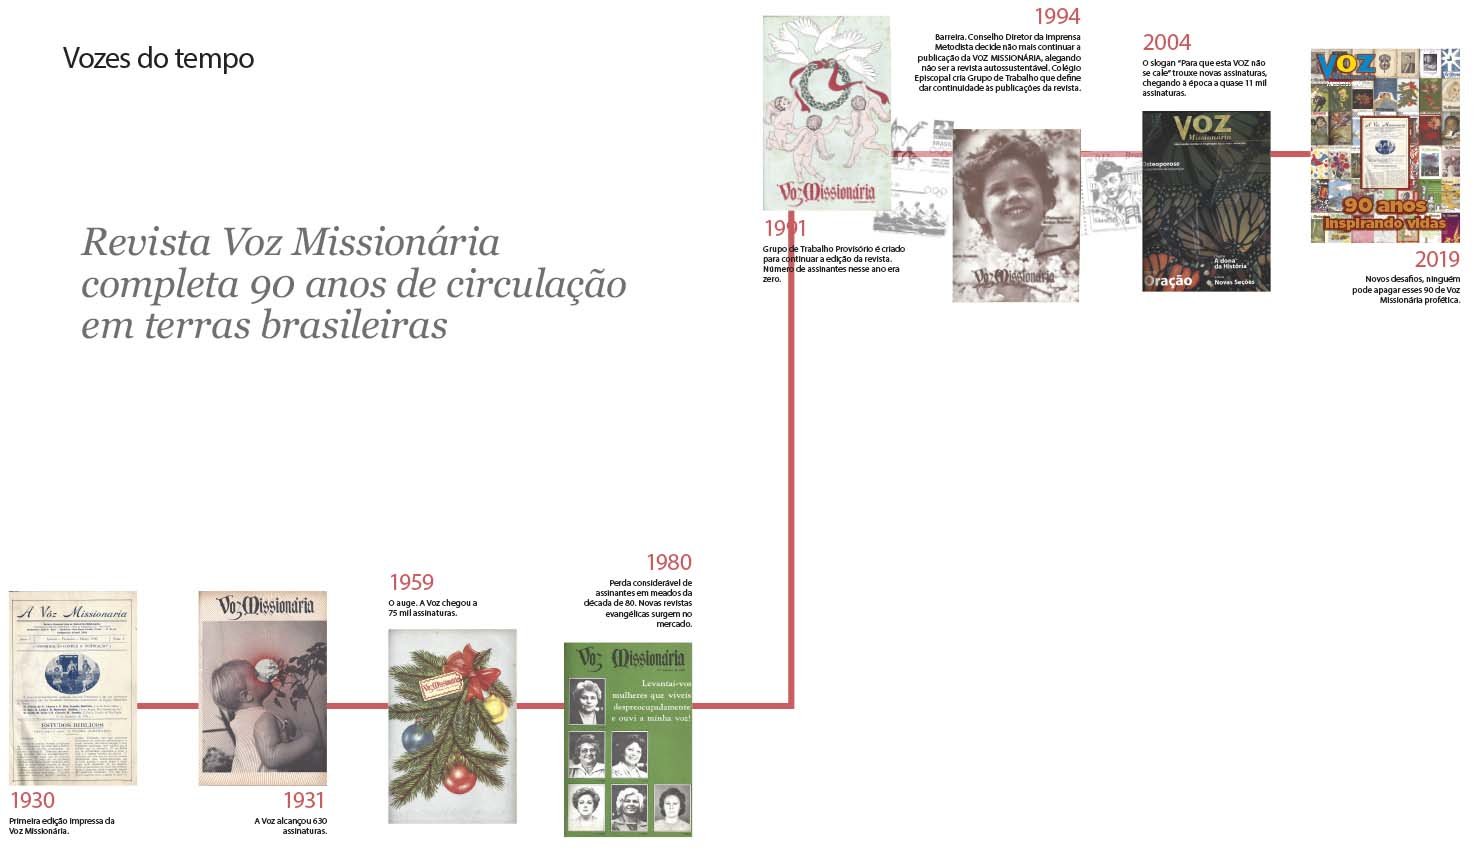 Um Voz que encanta: revista completa 90 anos de circulação no Brasil